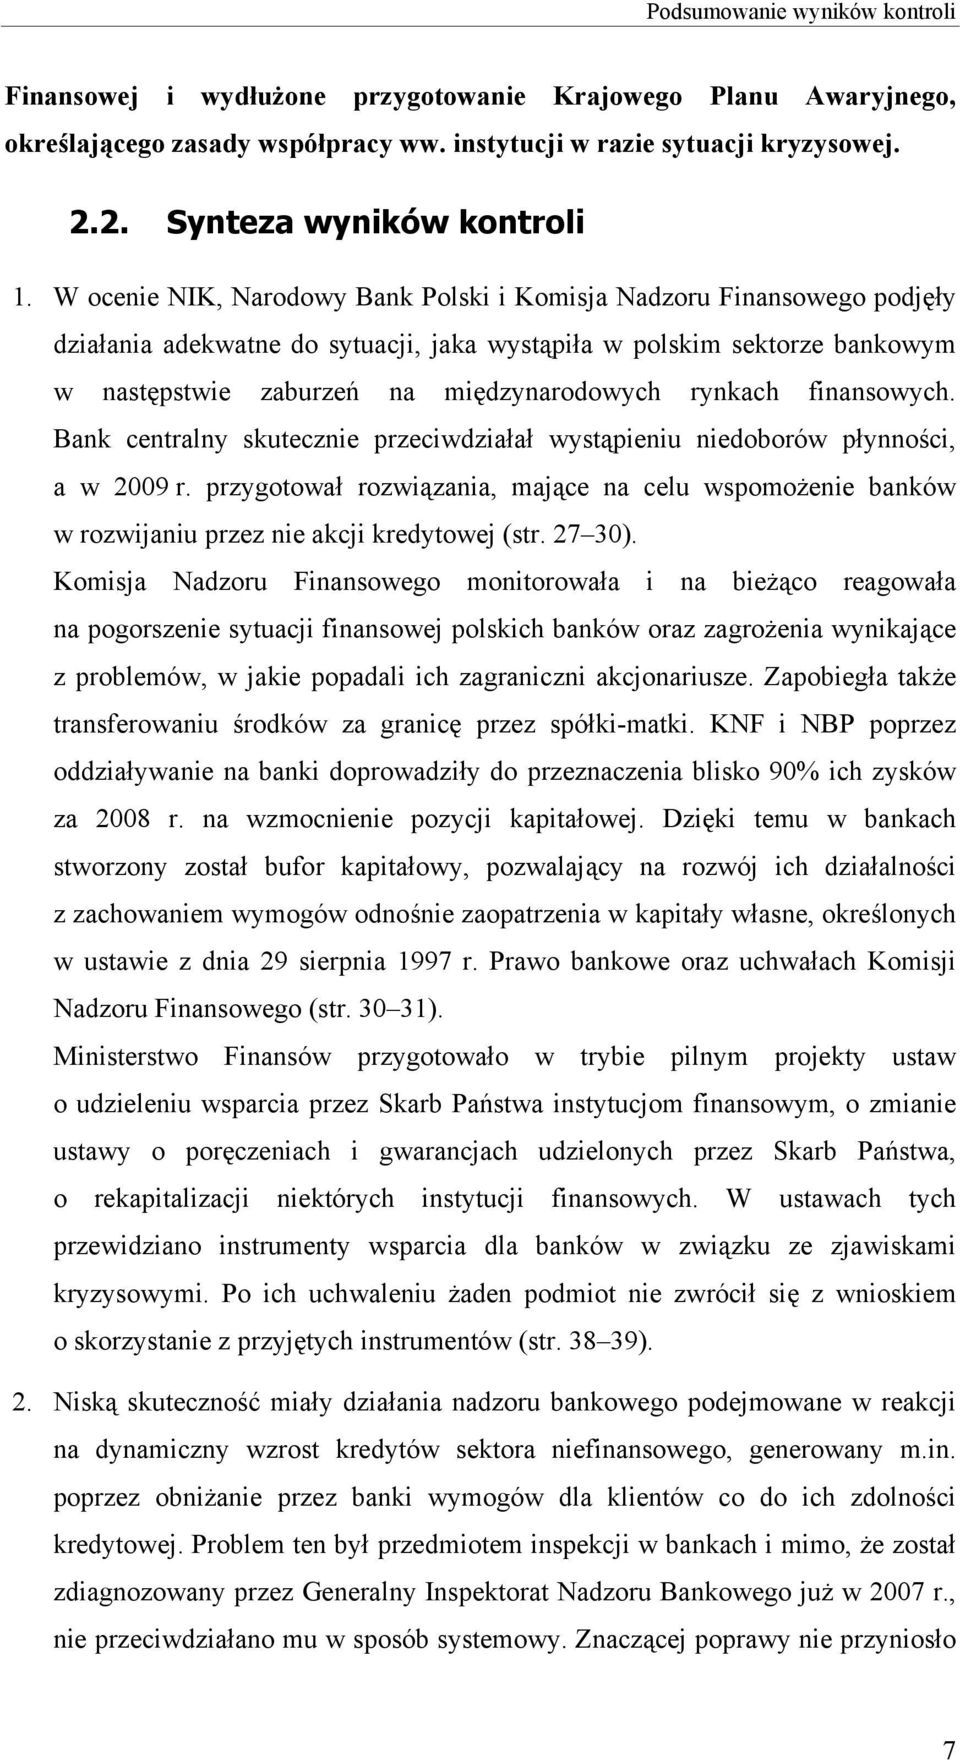 W ocenie NIK, Narodowy Bank Polski i Komisja Nadzoru Finansowego podjęły działania adekwatne do sytuacji, jaka wystąpiła w polskim sektorze bankowym w następstwie zaburzeń na międzynarodowych rynkach